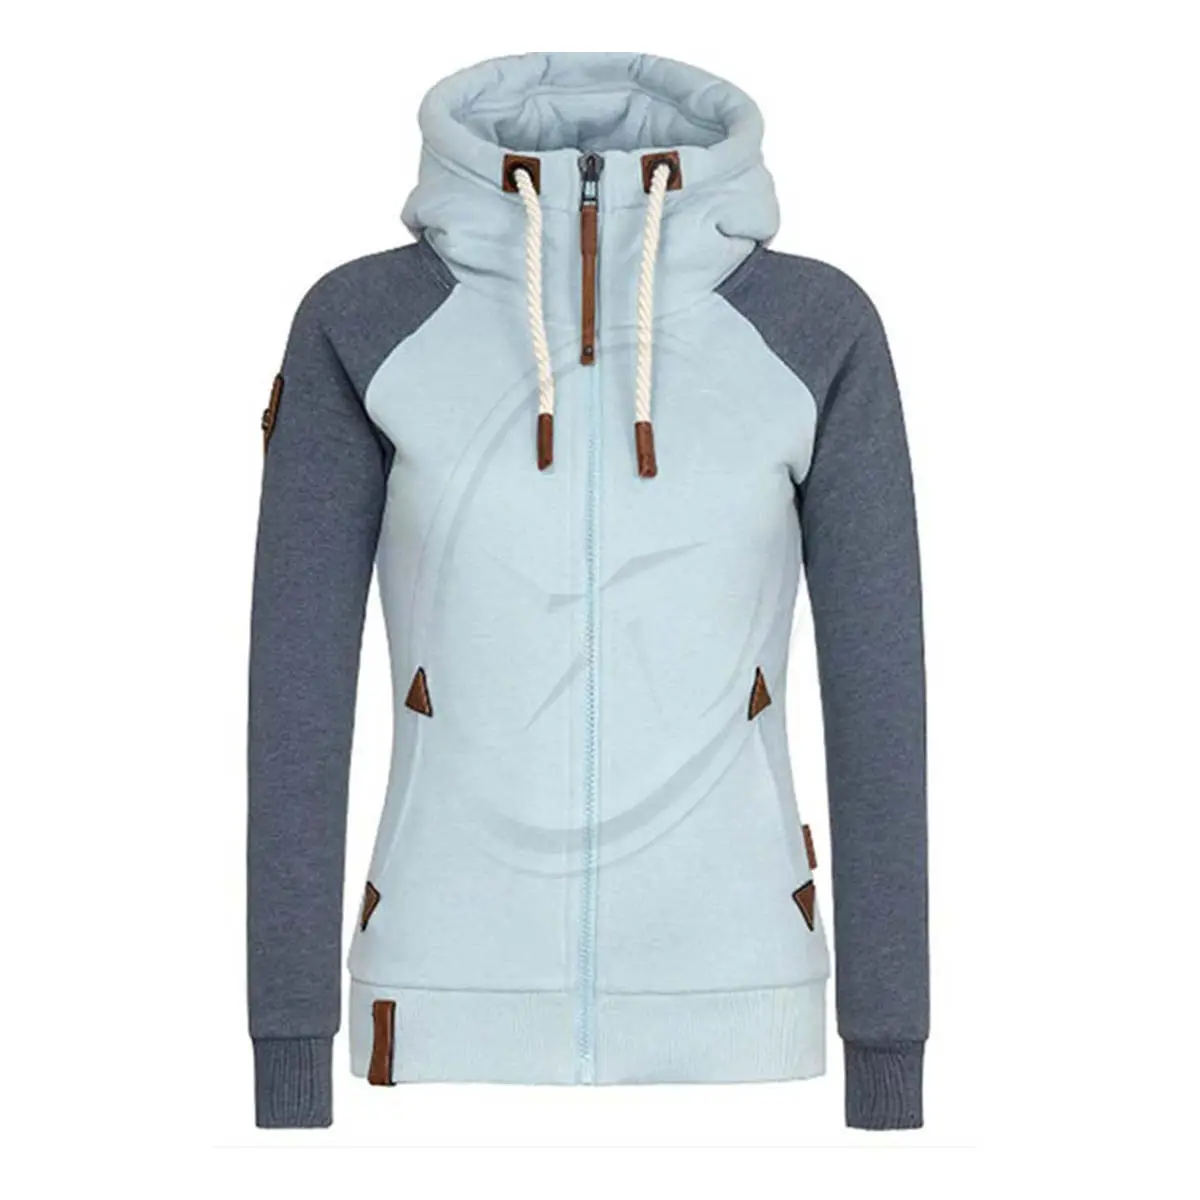 Raglan Ärmel Sweatshirt Mit Tasche Slim Fit Hoodies Leder Logo Zip Up Hoodie Für Frauen Kontrast farbe Großhandel Lieferant